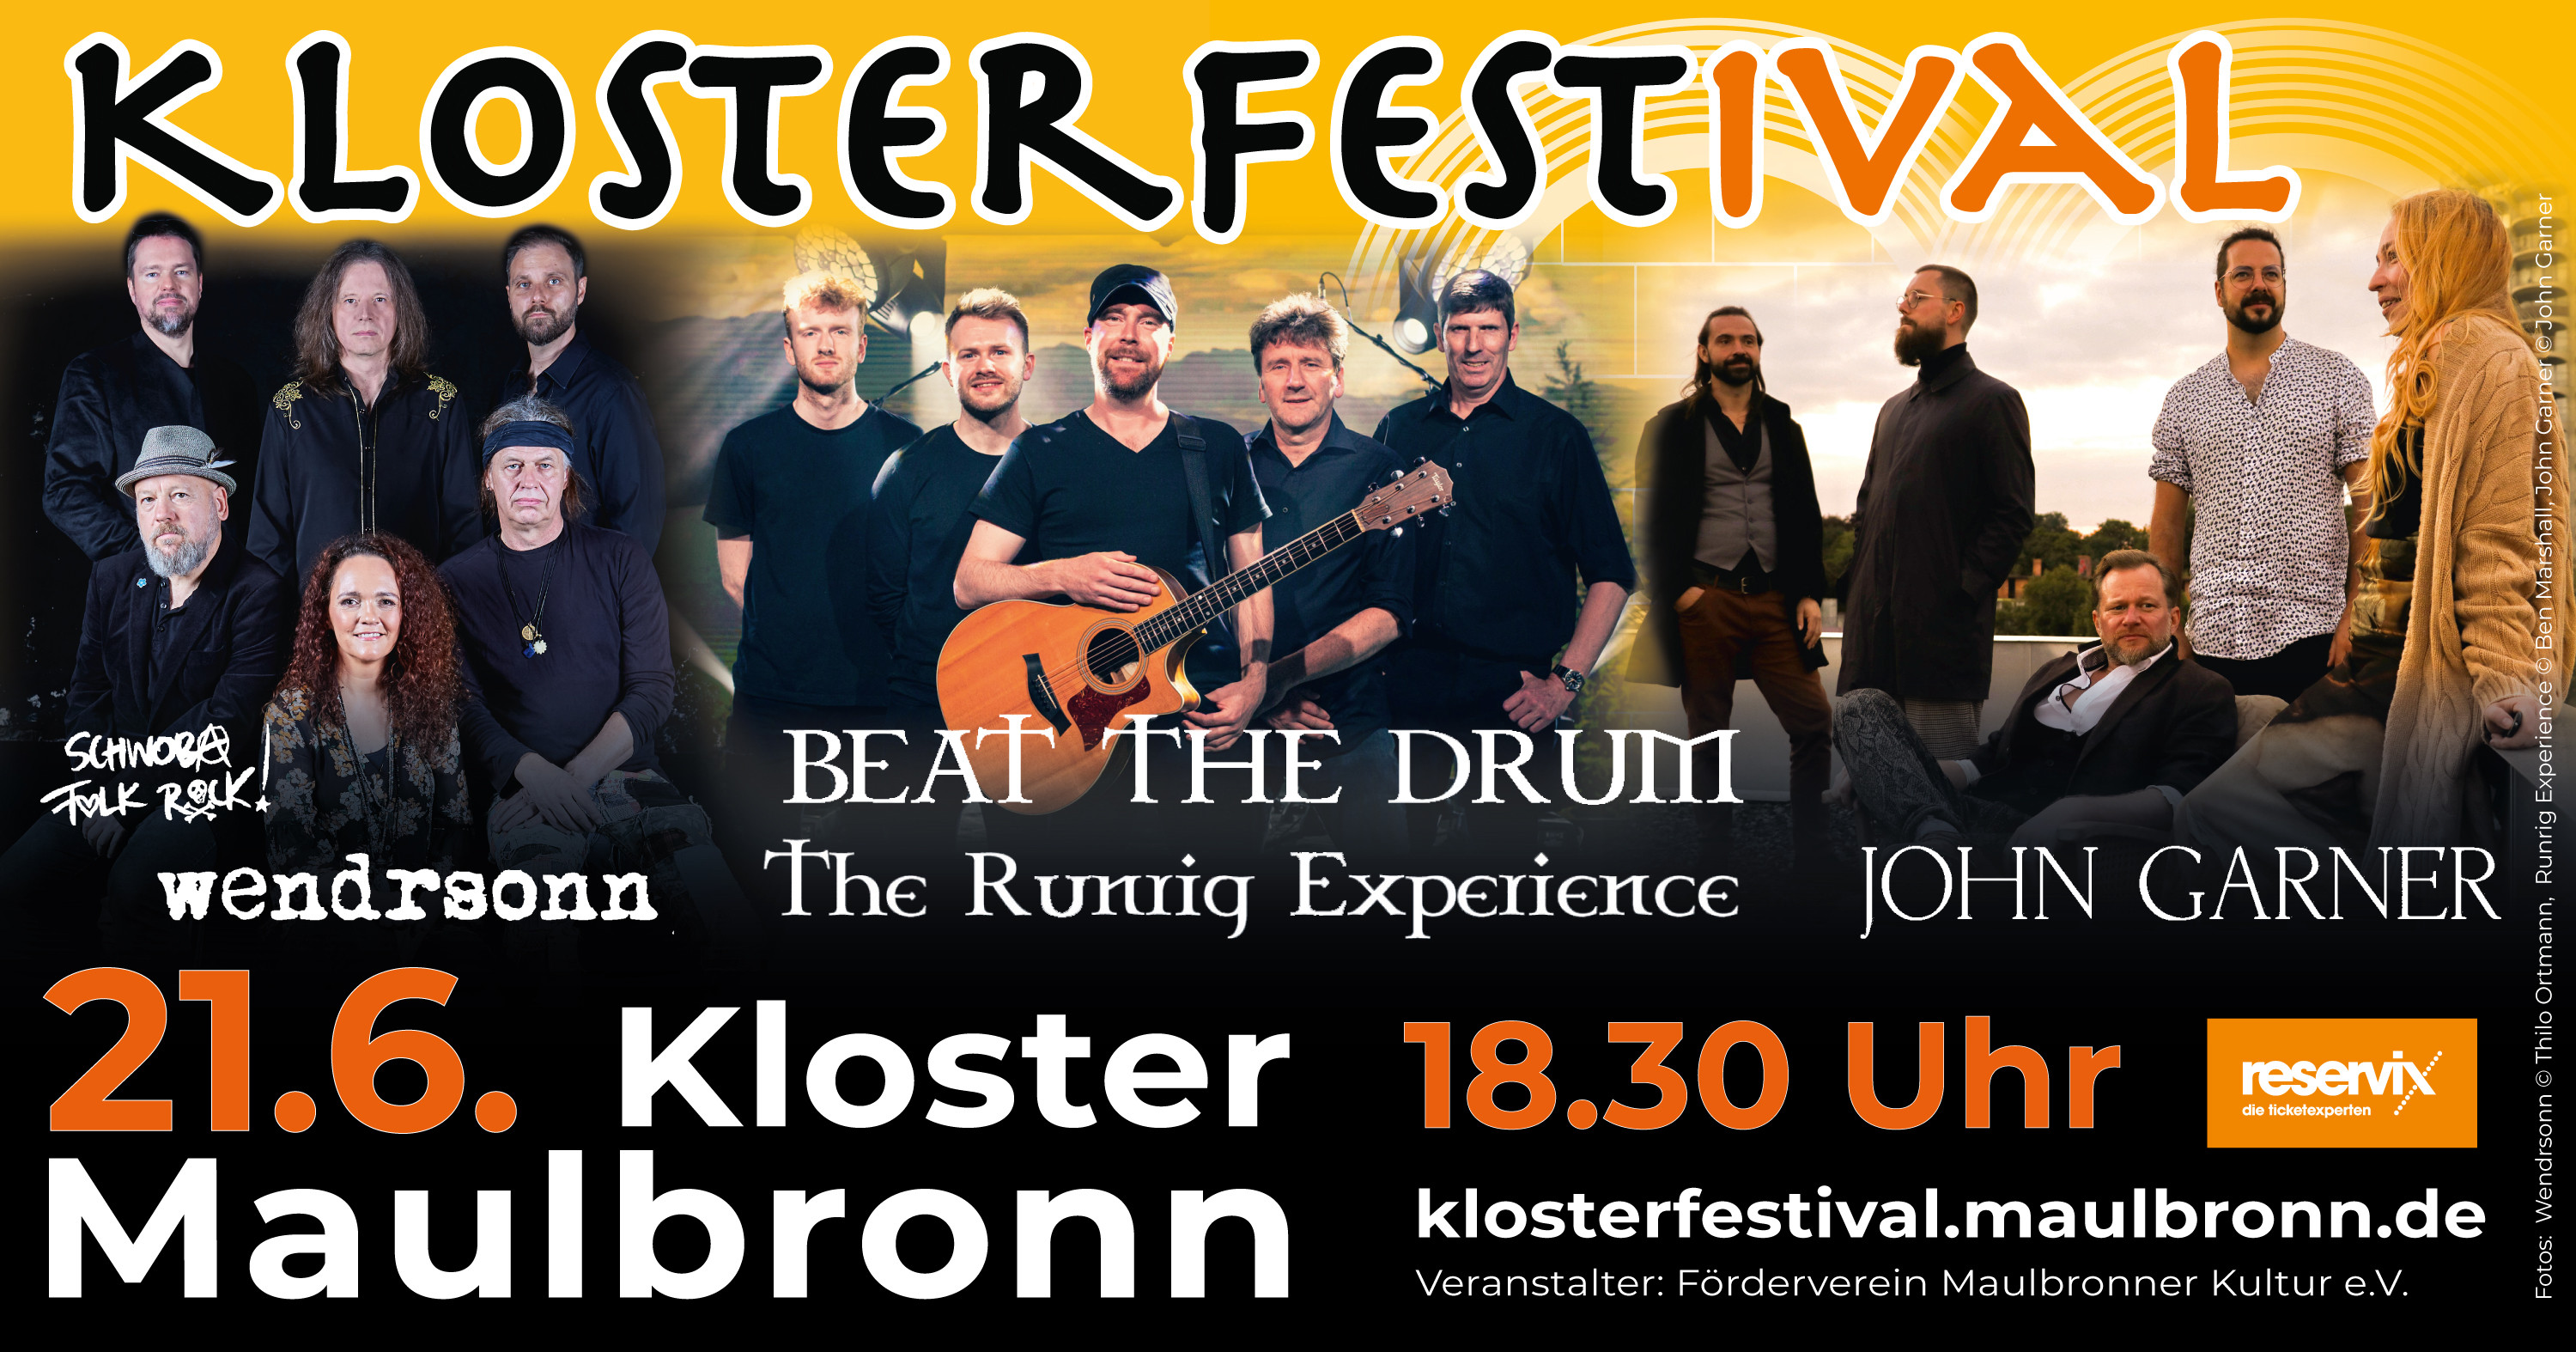 Plakat Klosterfestival quer